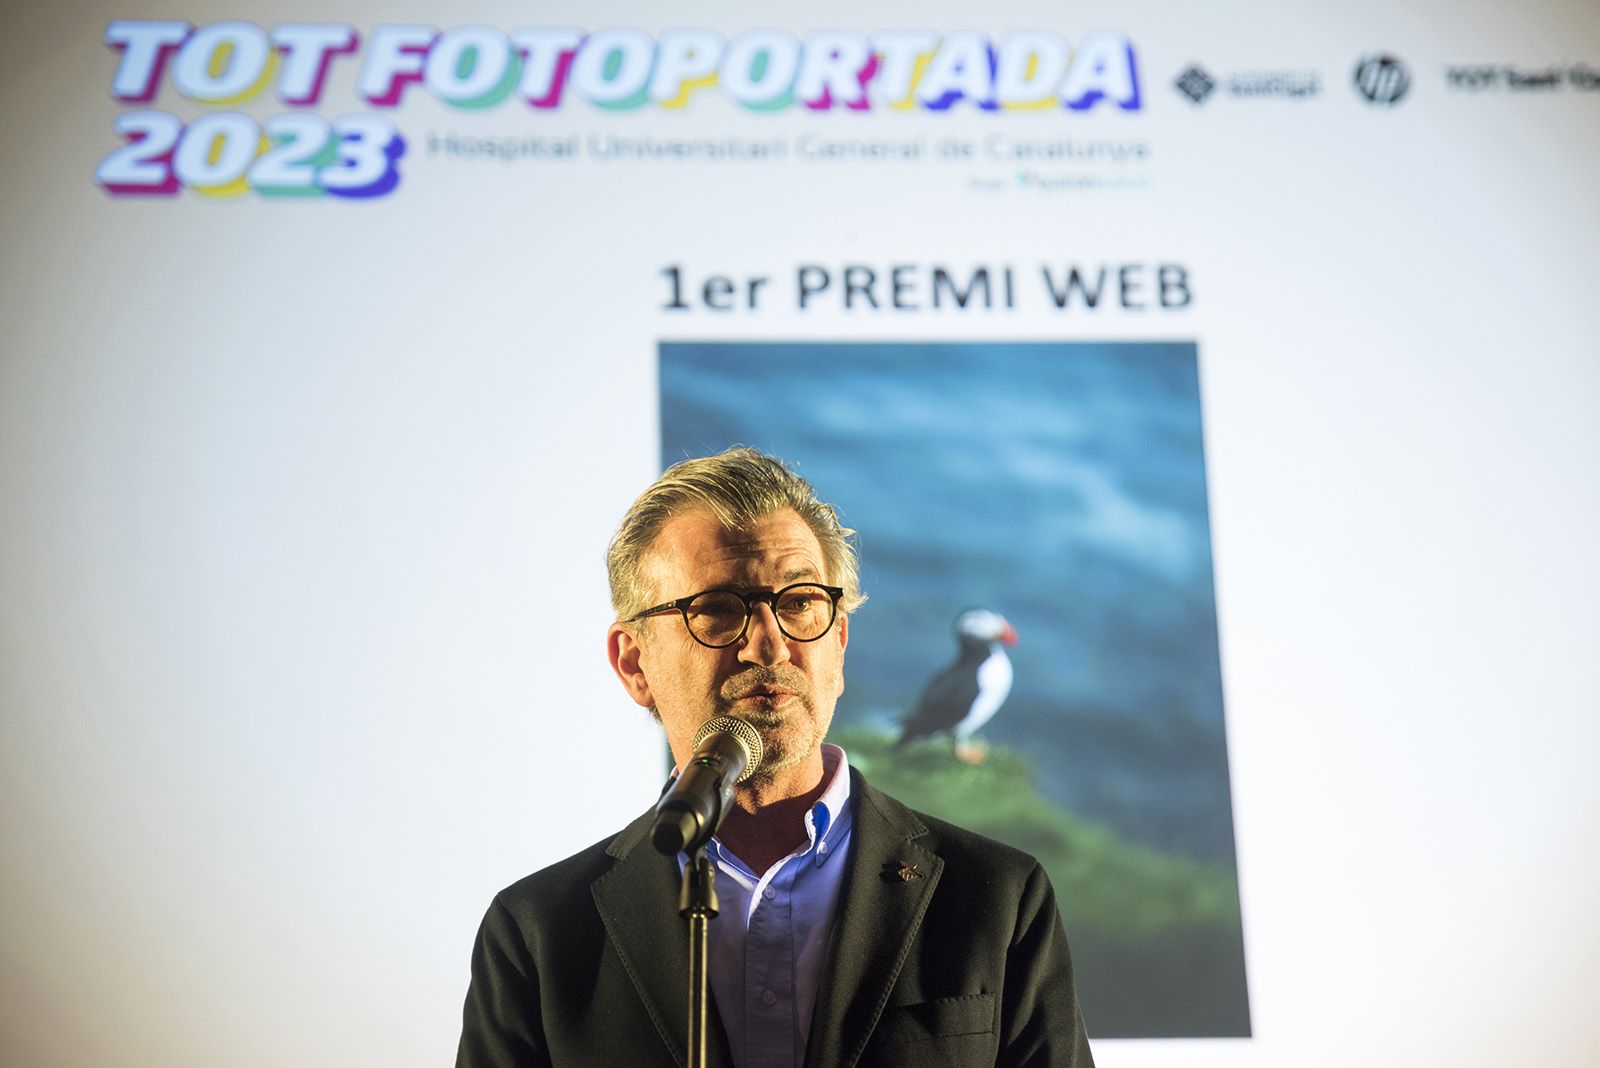 L'Alcalde Josep Maria Vallès als premis Tot Fotoportada 2023. FOTO: Bernat Millet.